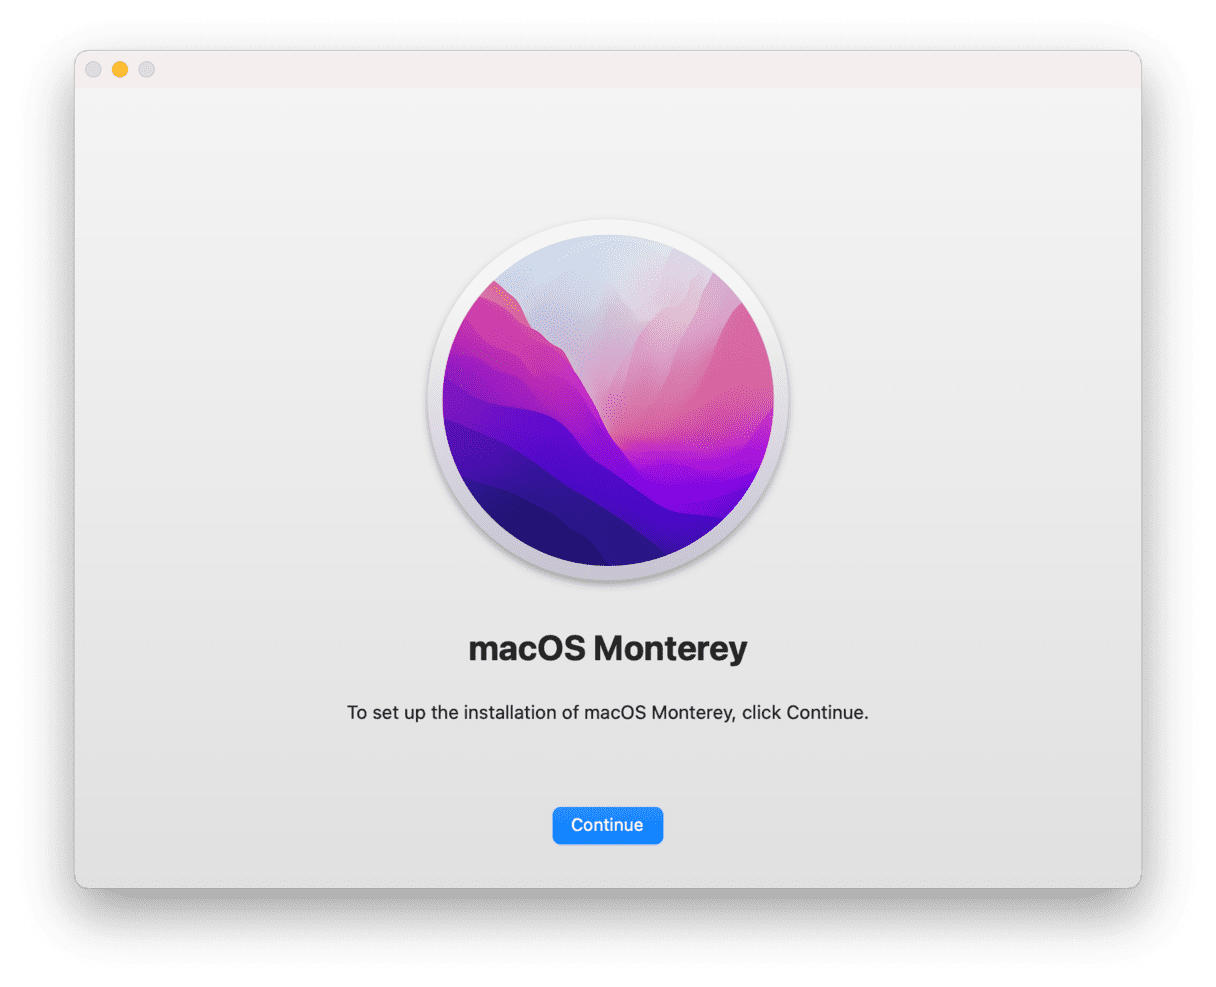 macOS Monterey update window